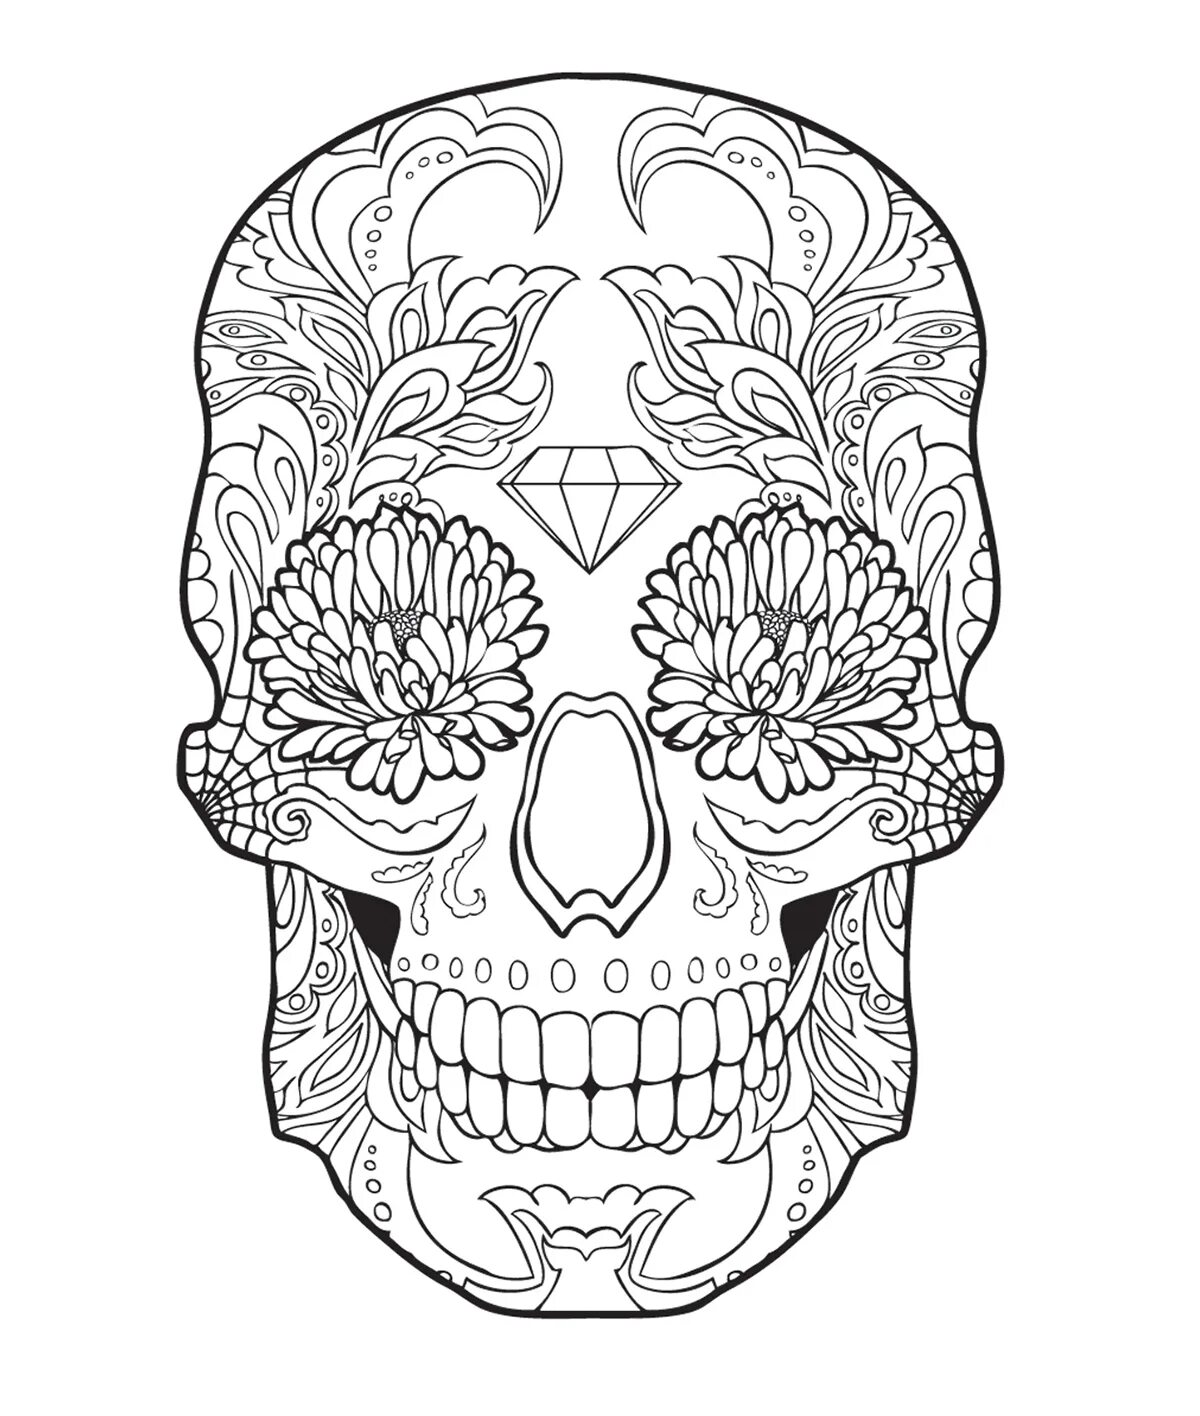 Раскраска череп. Мексиканский череп раскраска. Раскрашенный череп. Арт терапия череп. Керамический череп для раскрашивания.